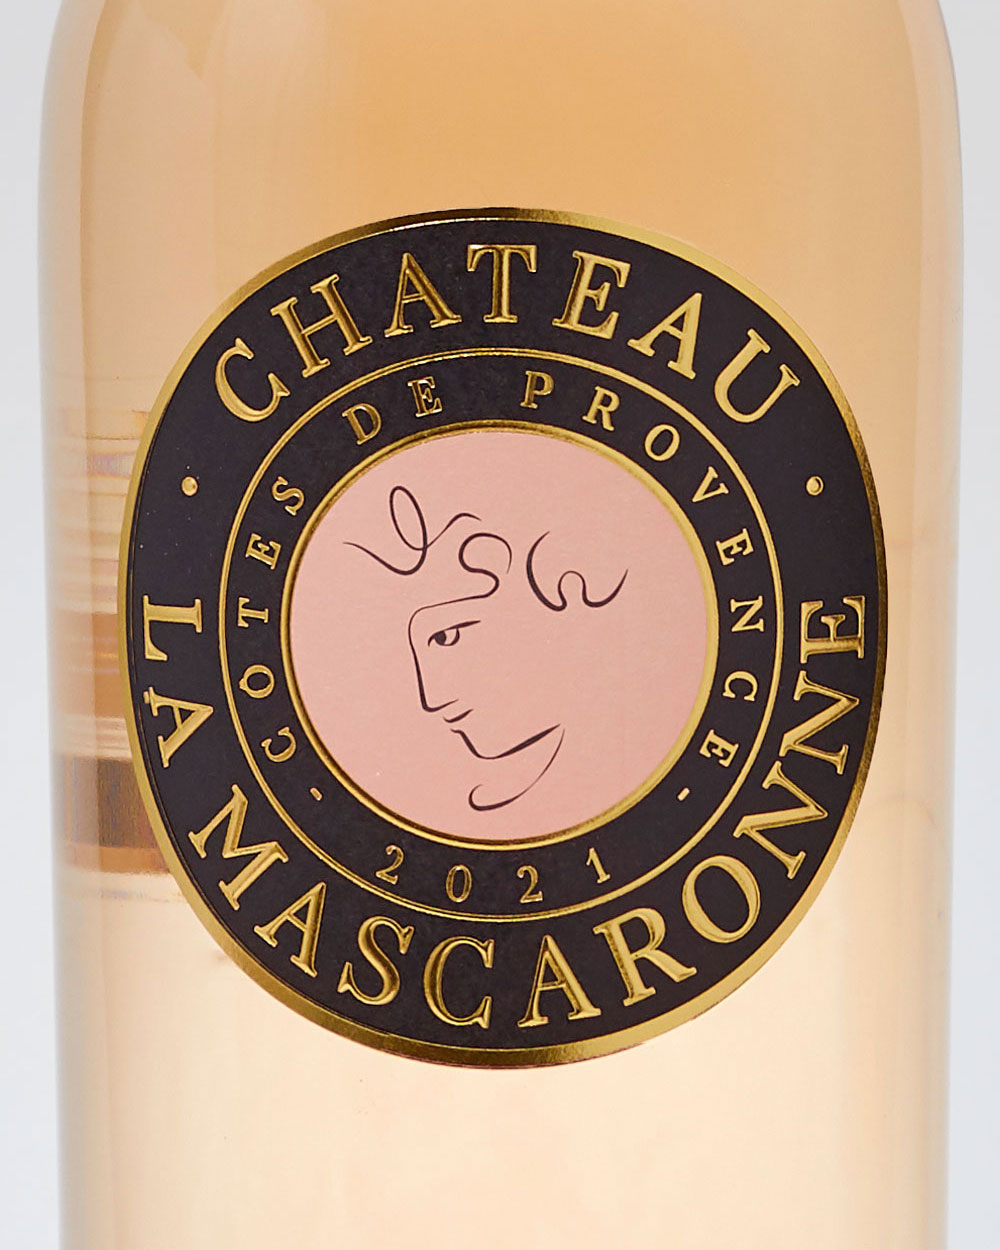 Château La Mascaronne Côtes de Provence Rosé label